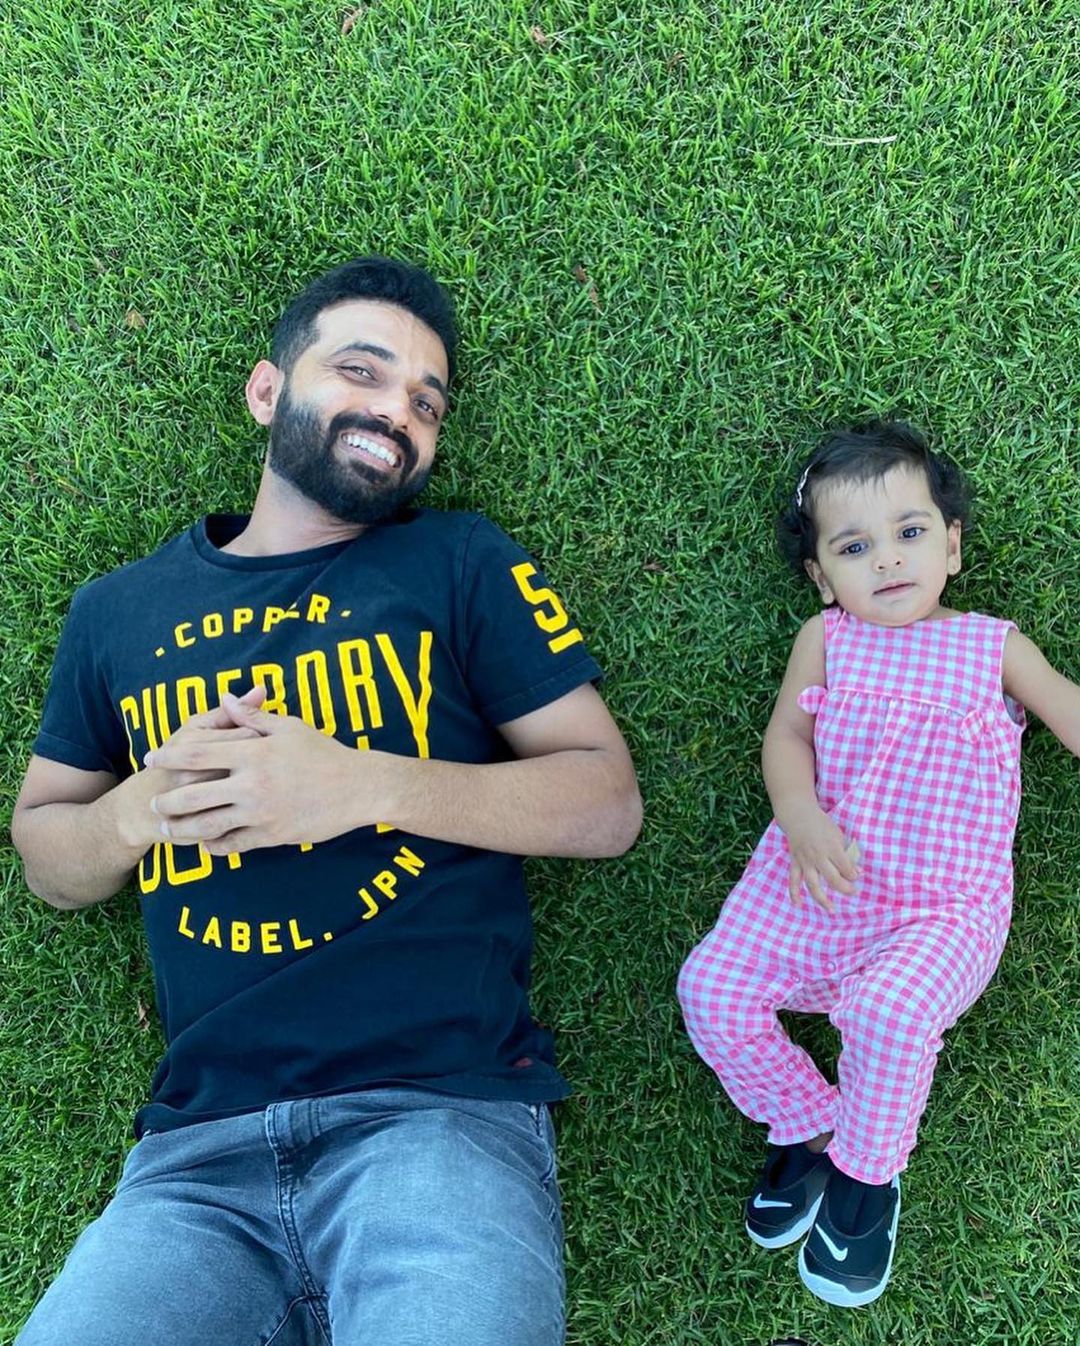  रहाणे ने बेटे के जन्म पर सोशल मीडिया पर फैंस के लिए एक खास लेटर भी शेयर किया है. (Instagram)